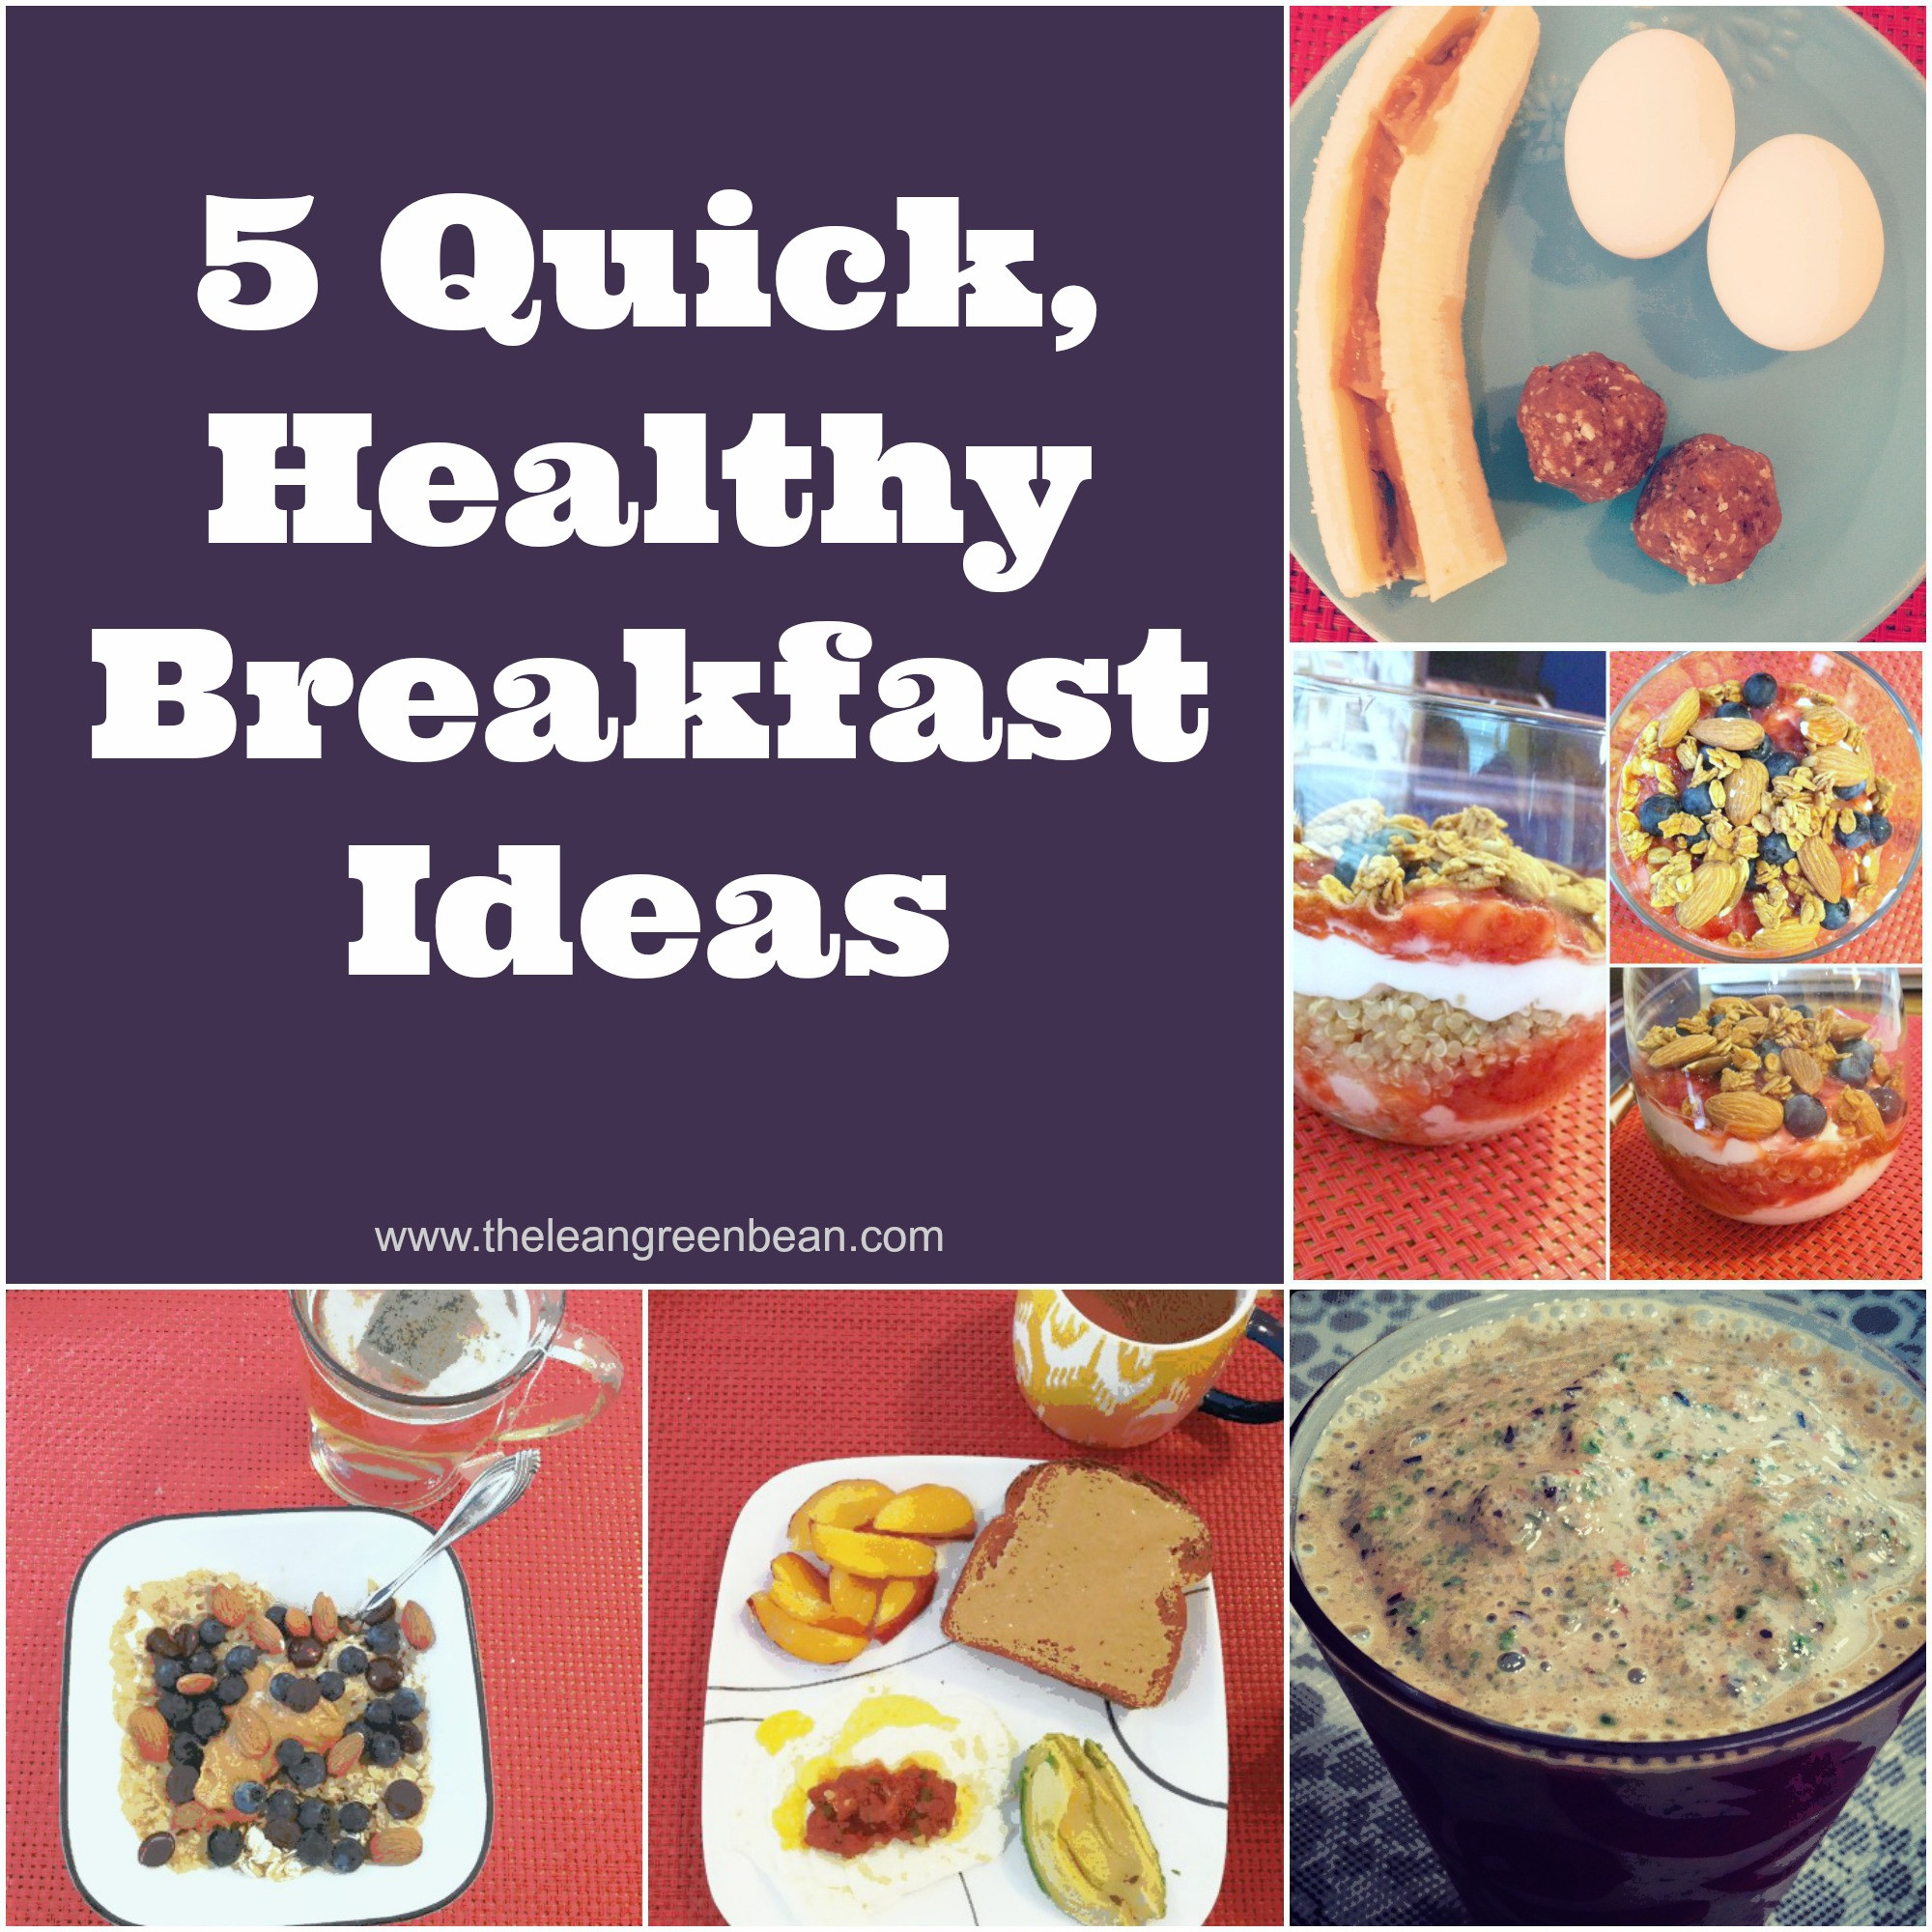 Easy Healthy Breakfast Ideas
 5 Quick Healthy Breakfast Ideas from a Registered Dietitian